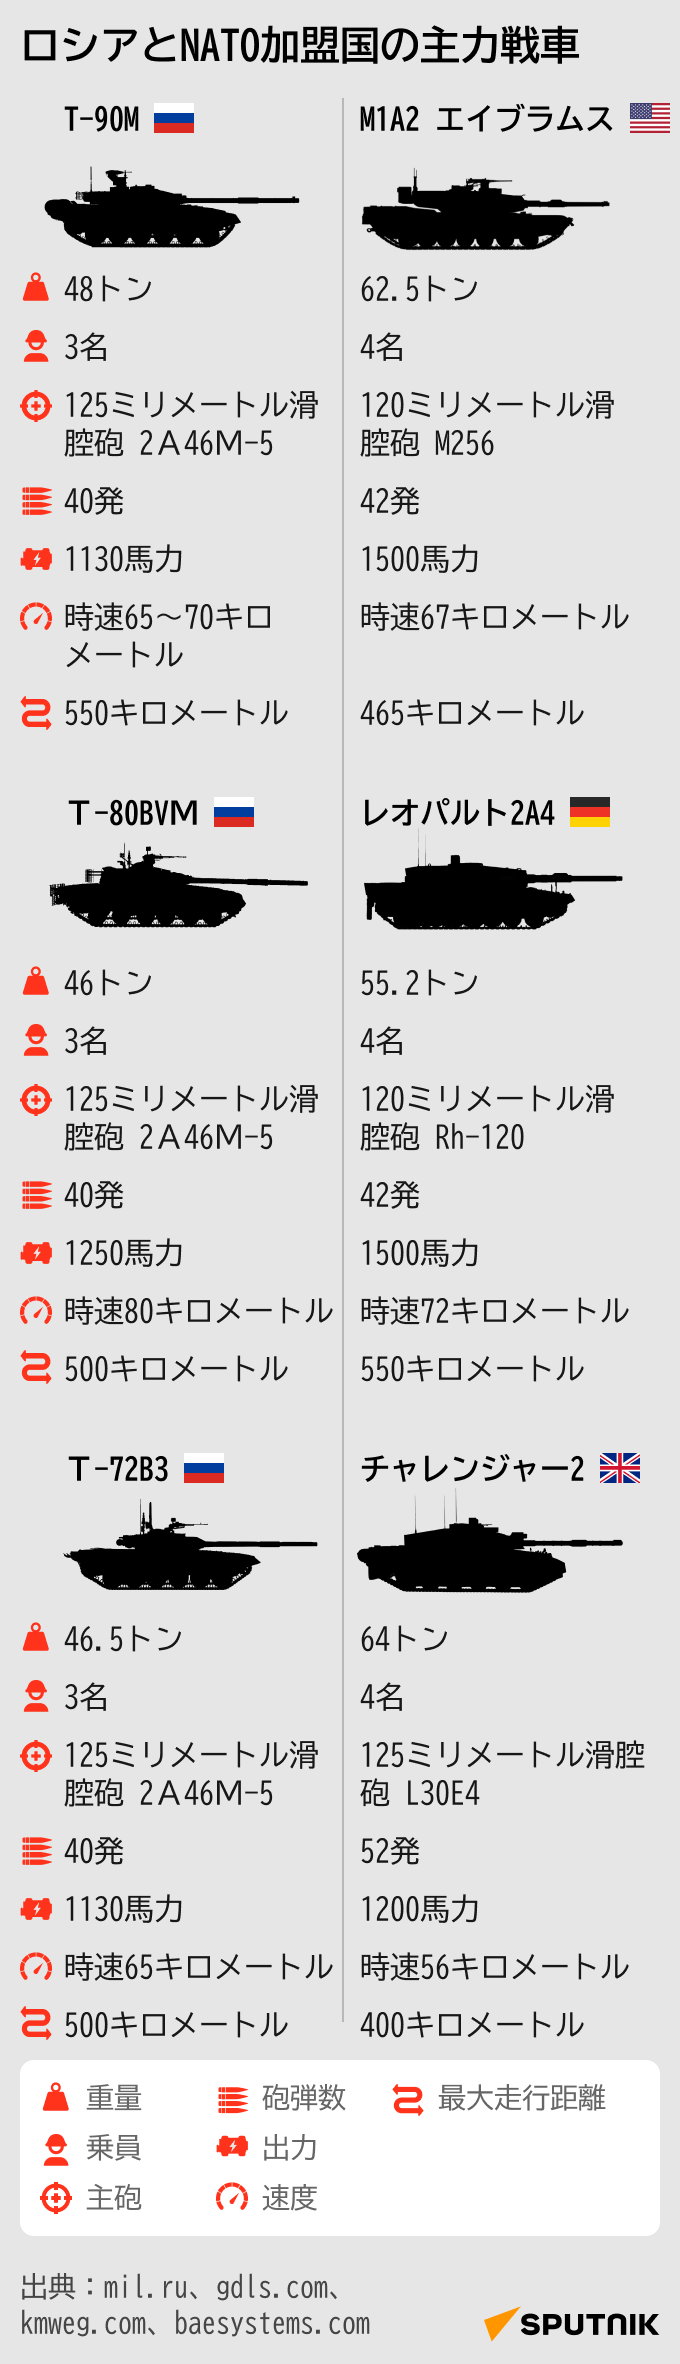 ロシアとNATOの主力戦車を比較 - Sputnik 日本